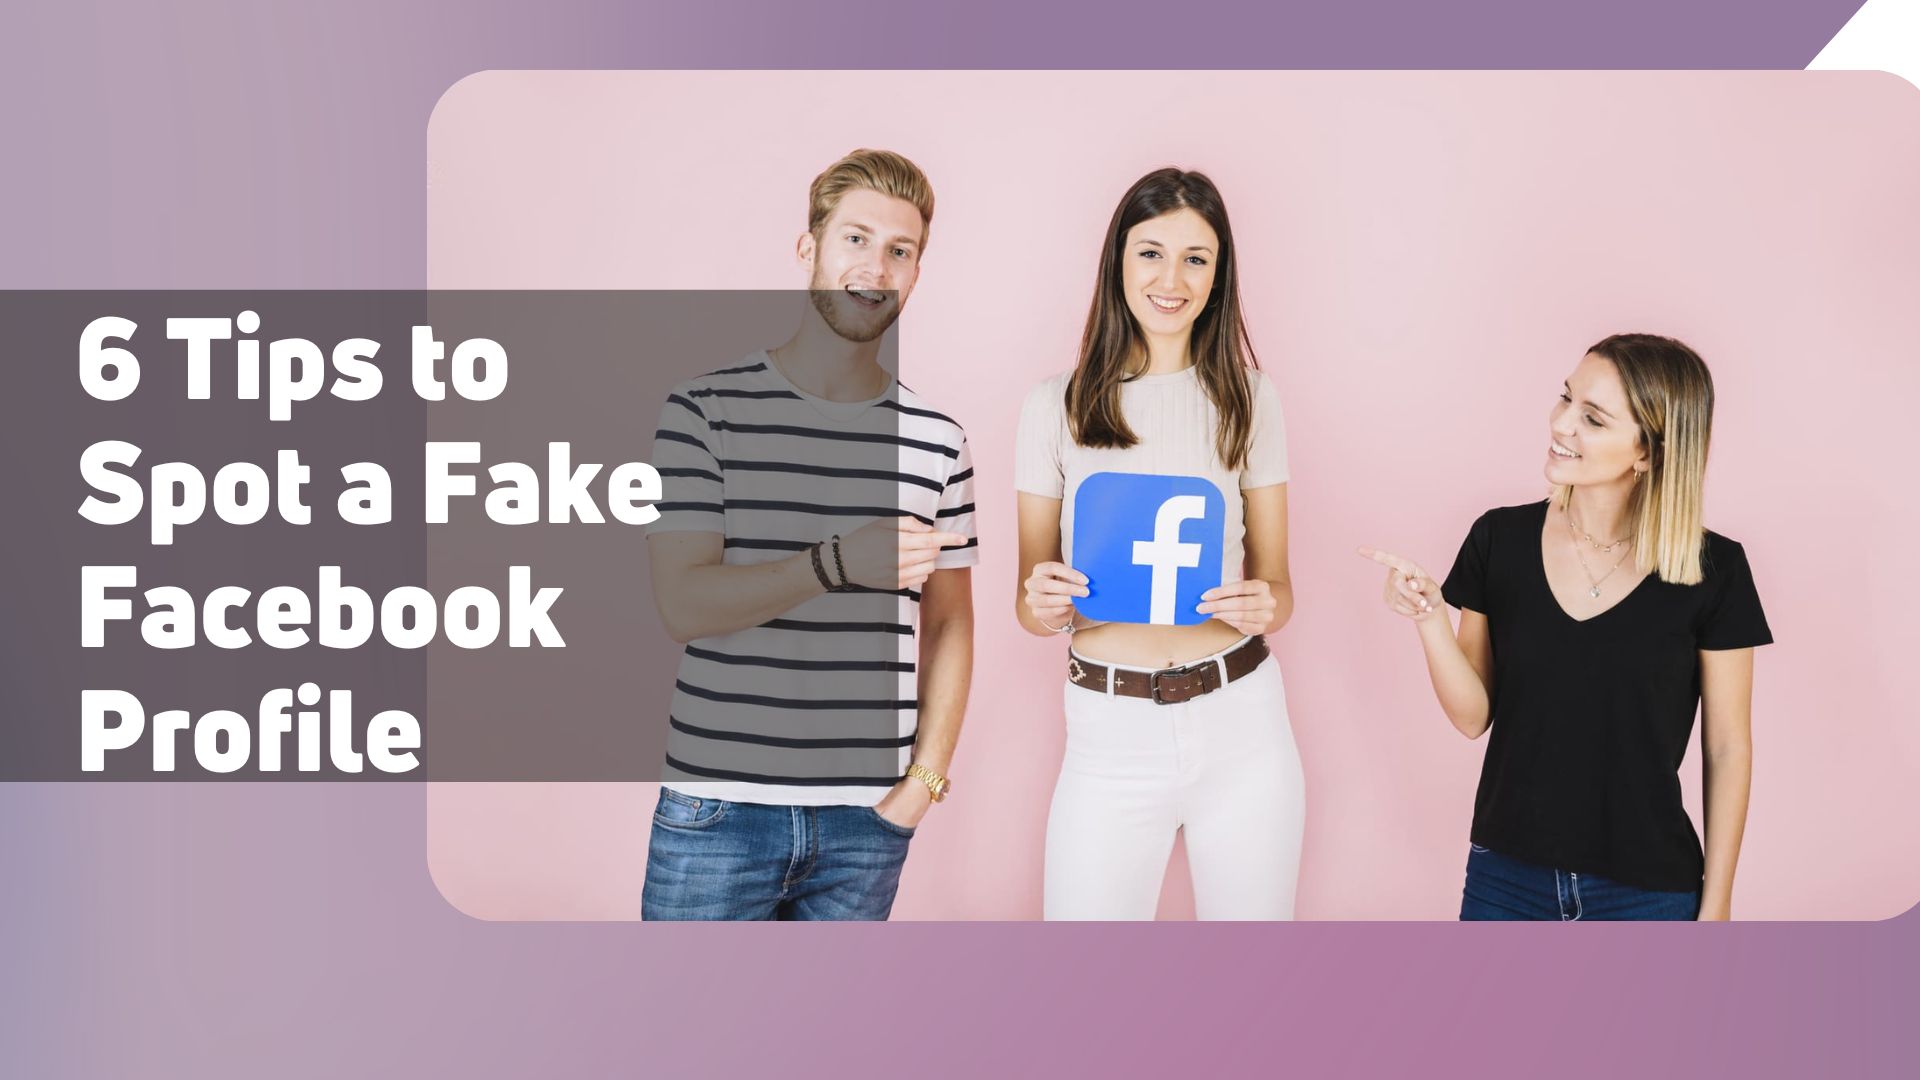 6 Tips to Spot a Fake Facebook Profile